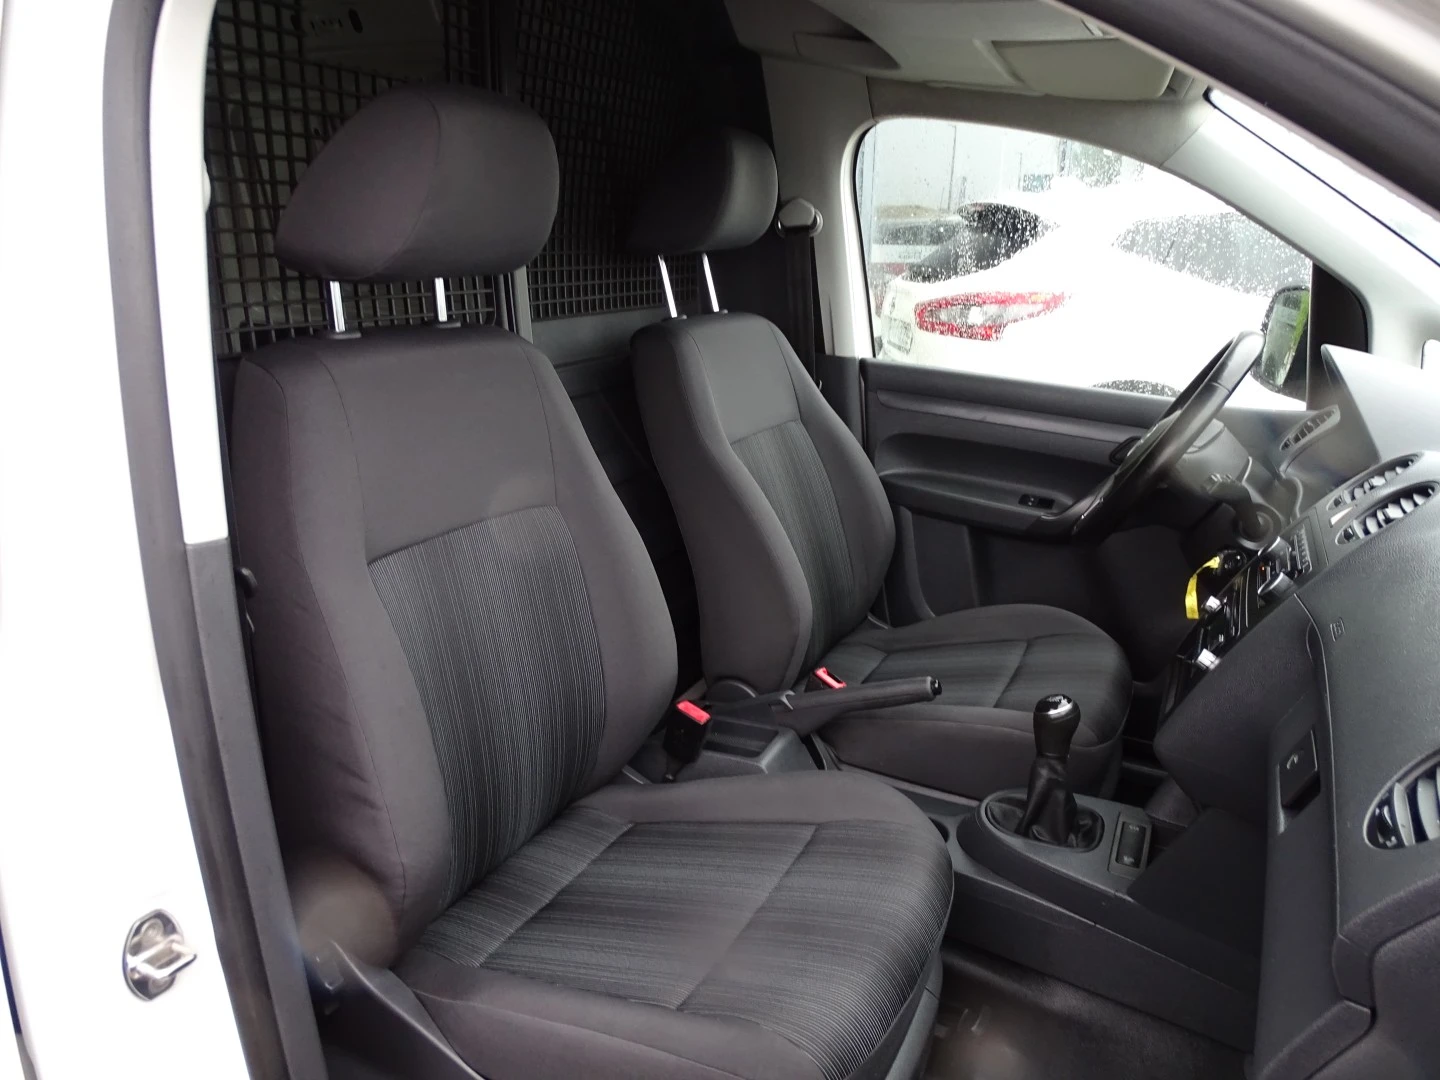 VW Caddy 1.6 TDi Entry